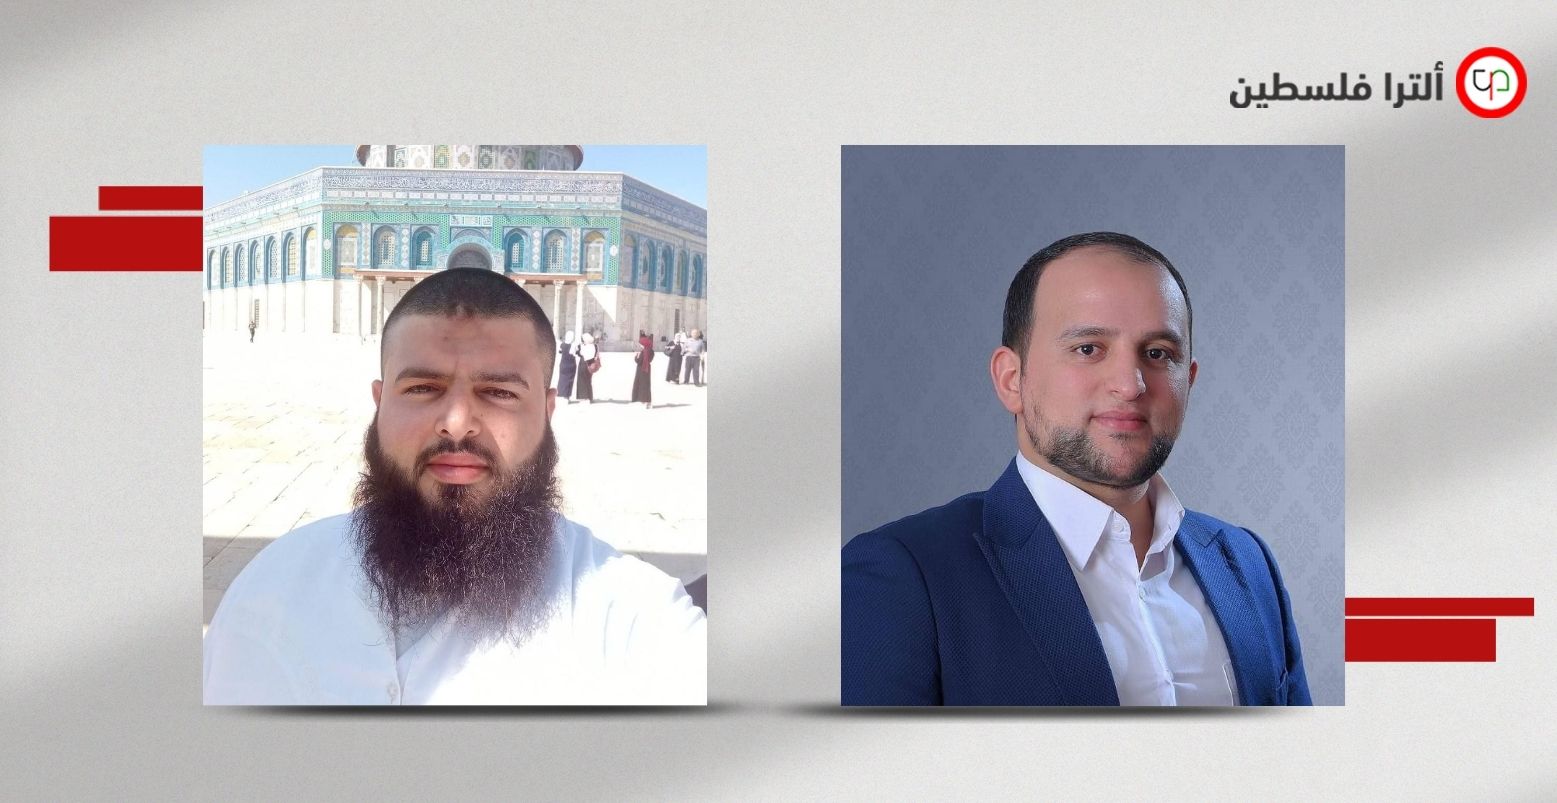 اعتقال المحاضر في جامعة النجاح أسيد فطاير، والشاب فادي غزال من راس العين بنابلس